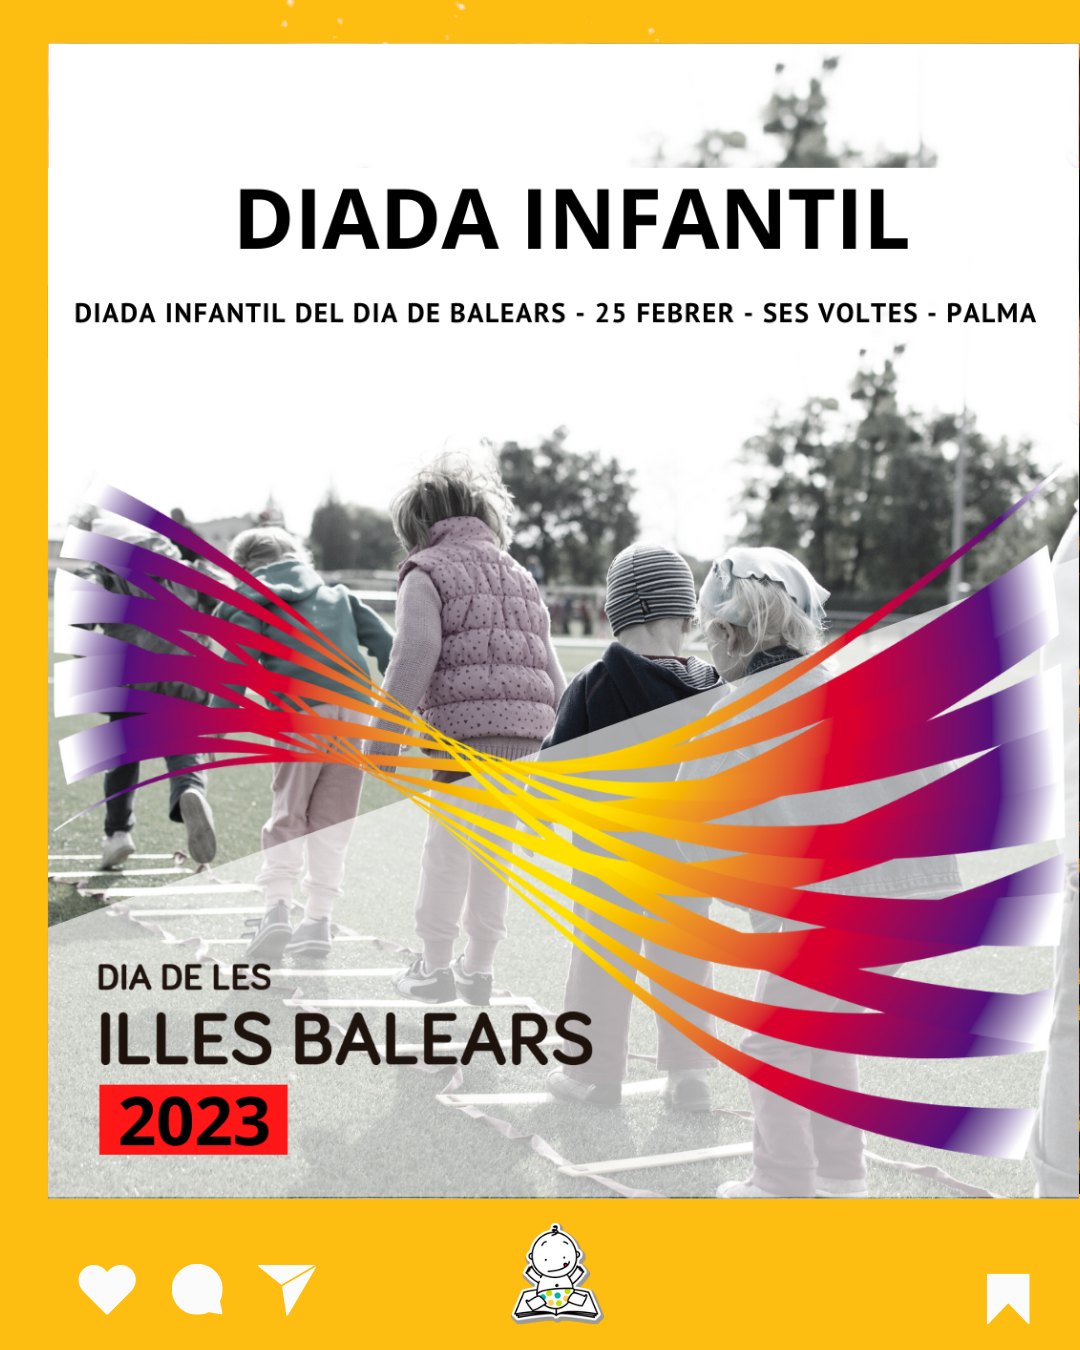 DIA DE LES ILLES BALEARS – DIADA INFANTIL (25/02)